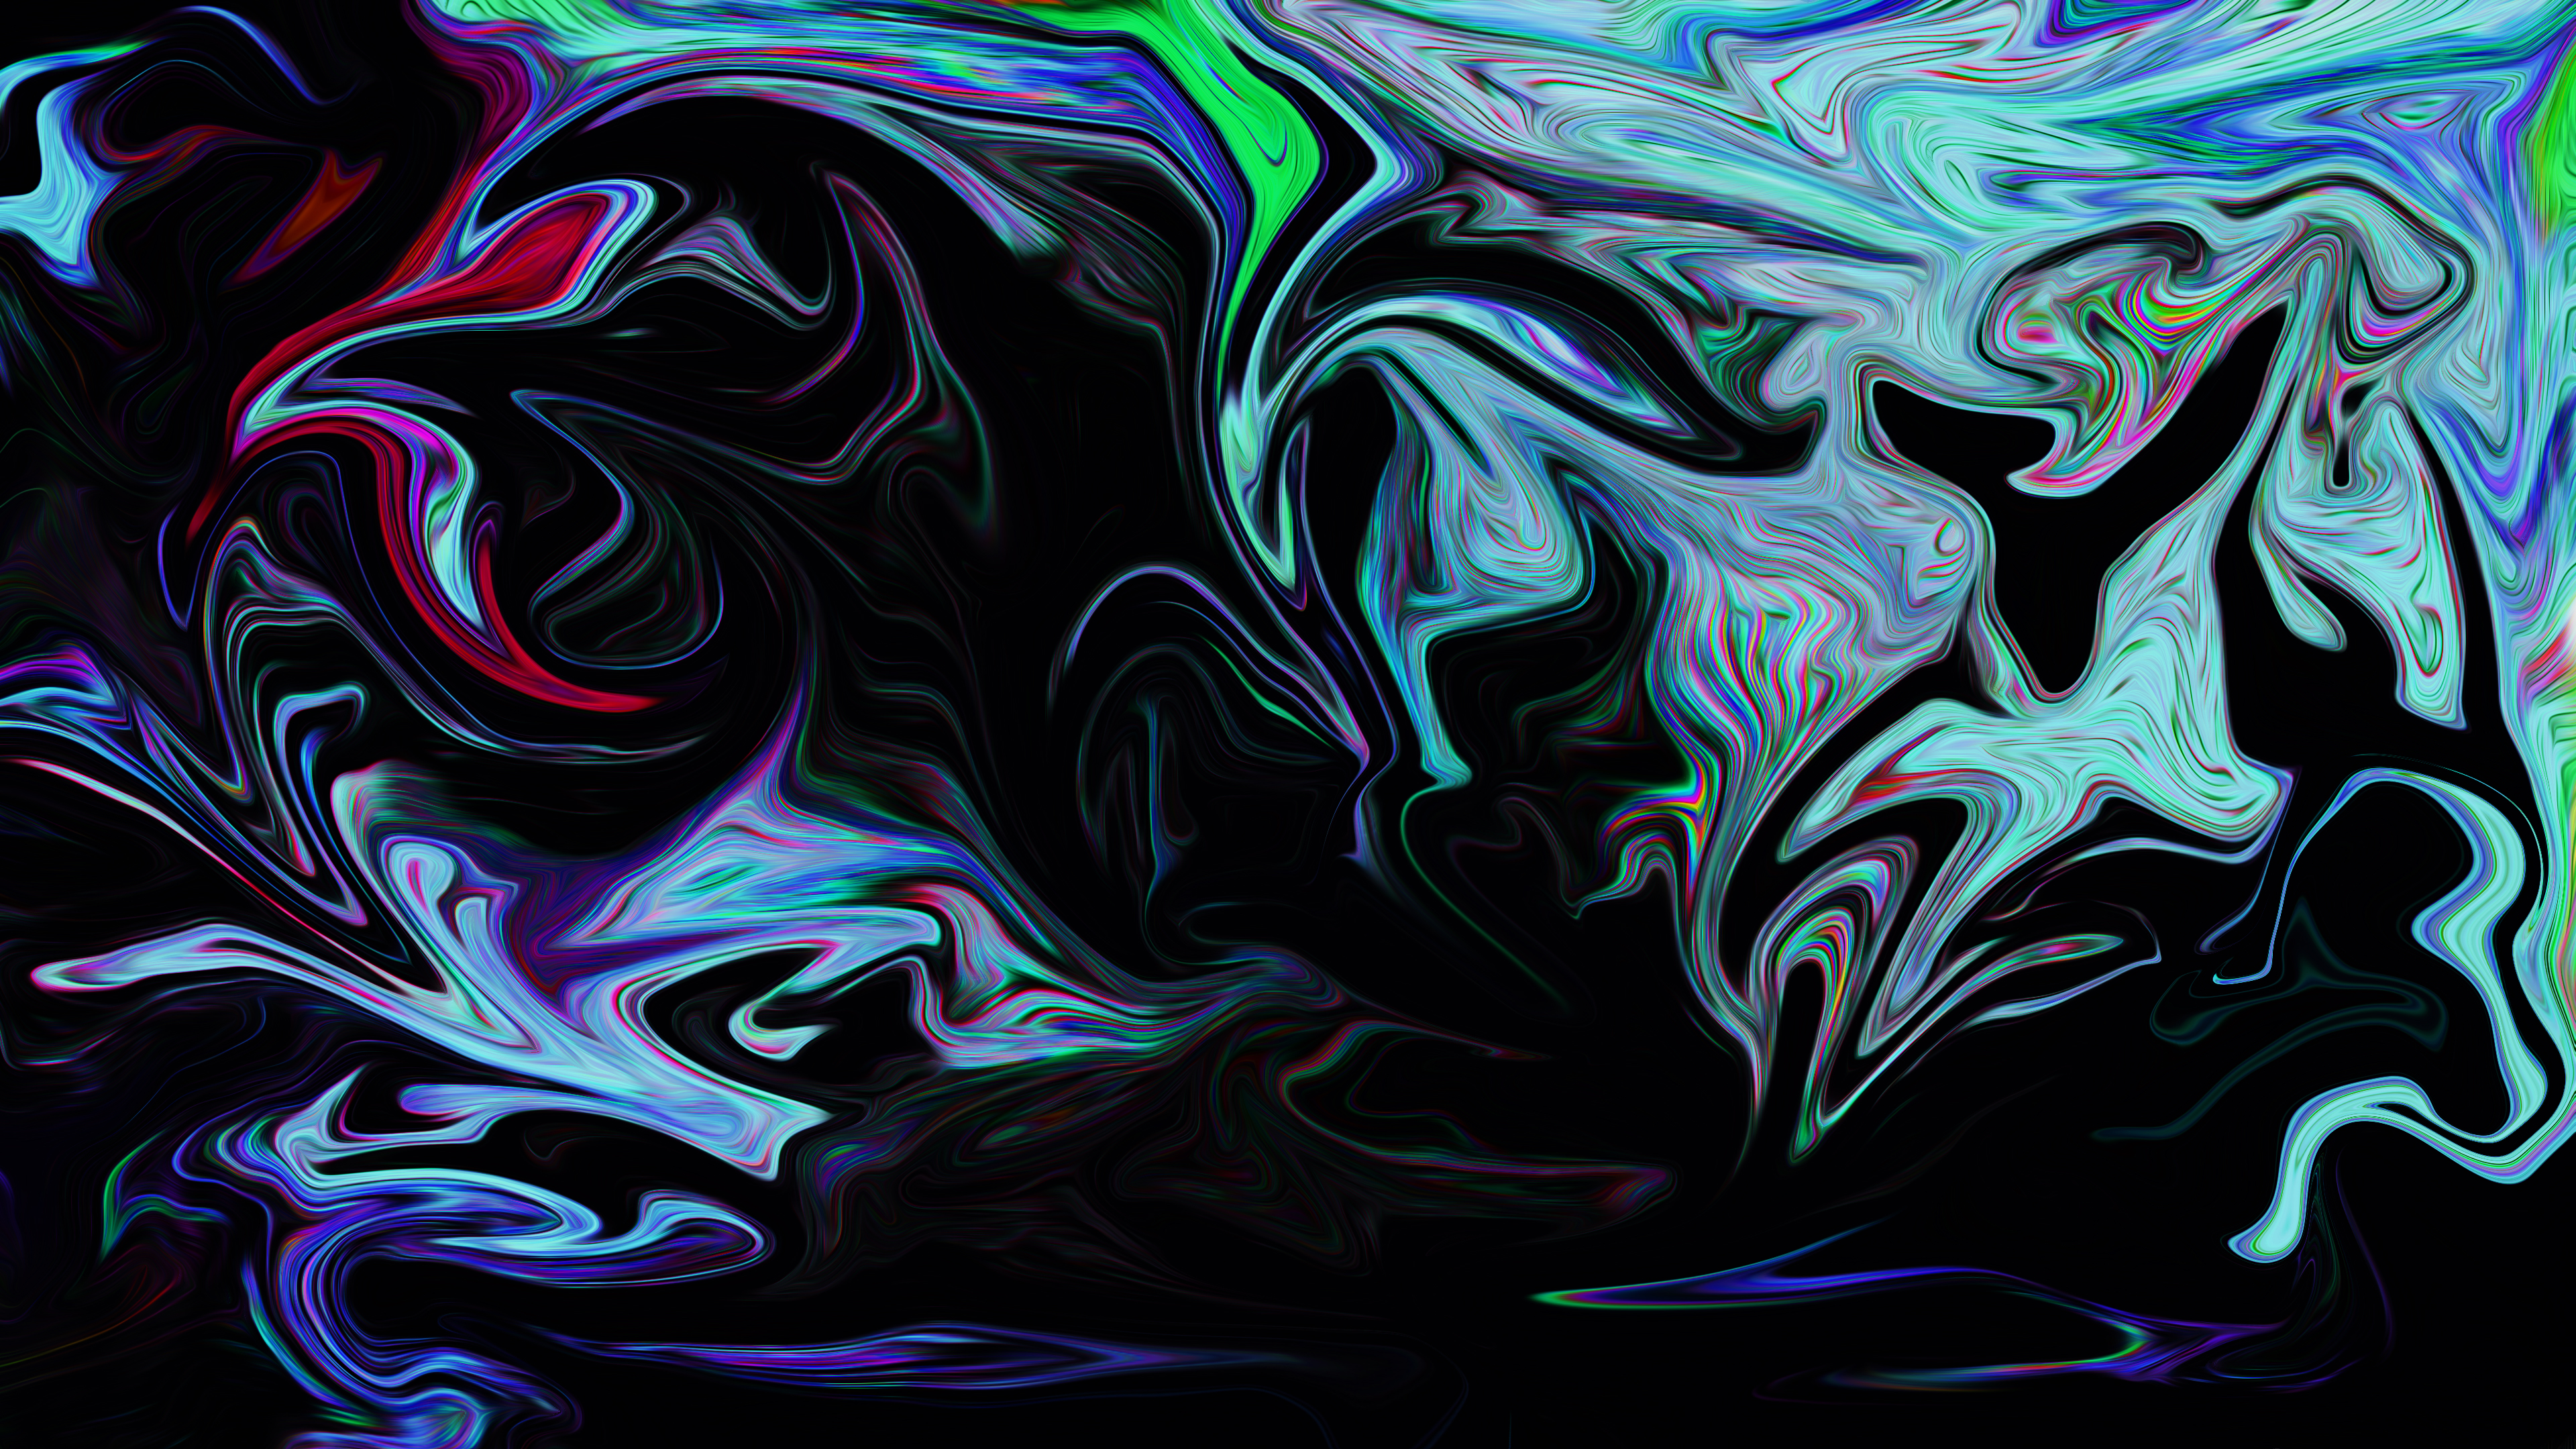 Abstract Fluid Liquid Dark Interference Black Digital Art Artwork Glitch Art 3840x2160